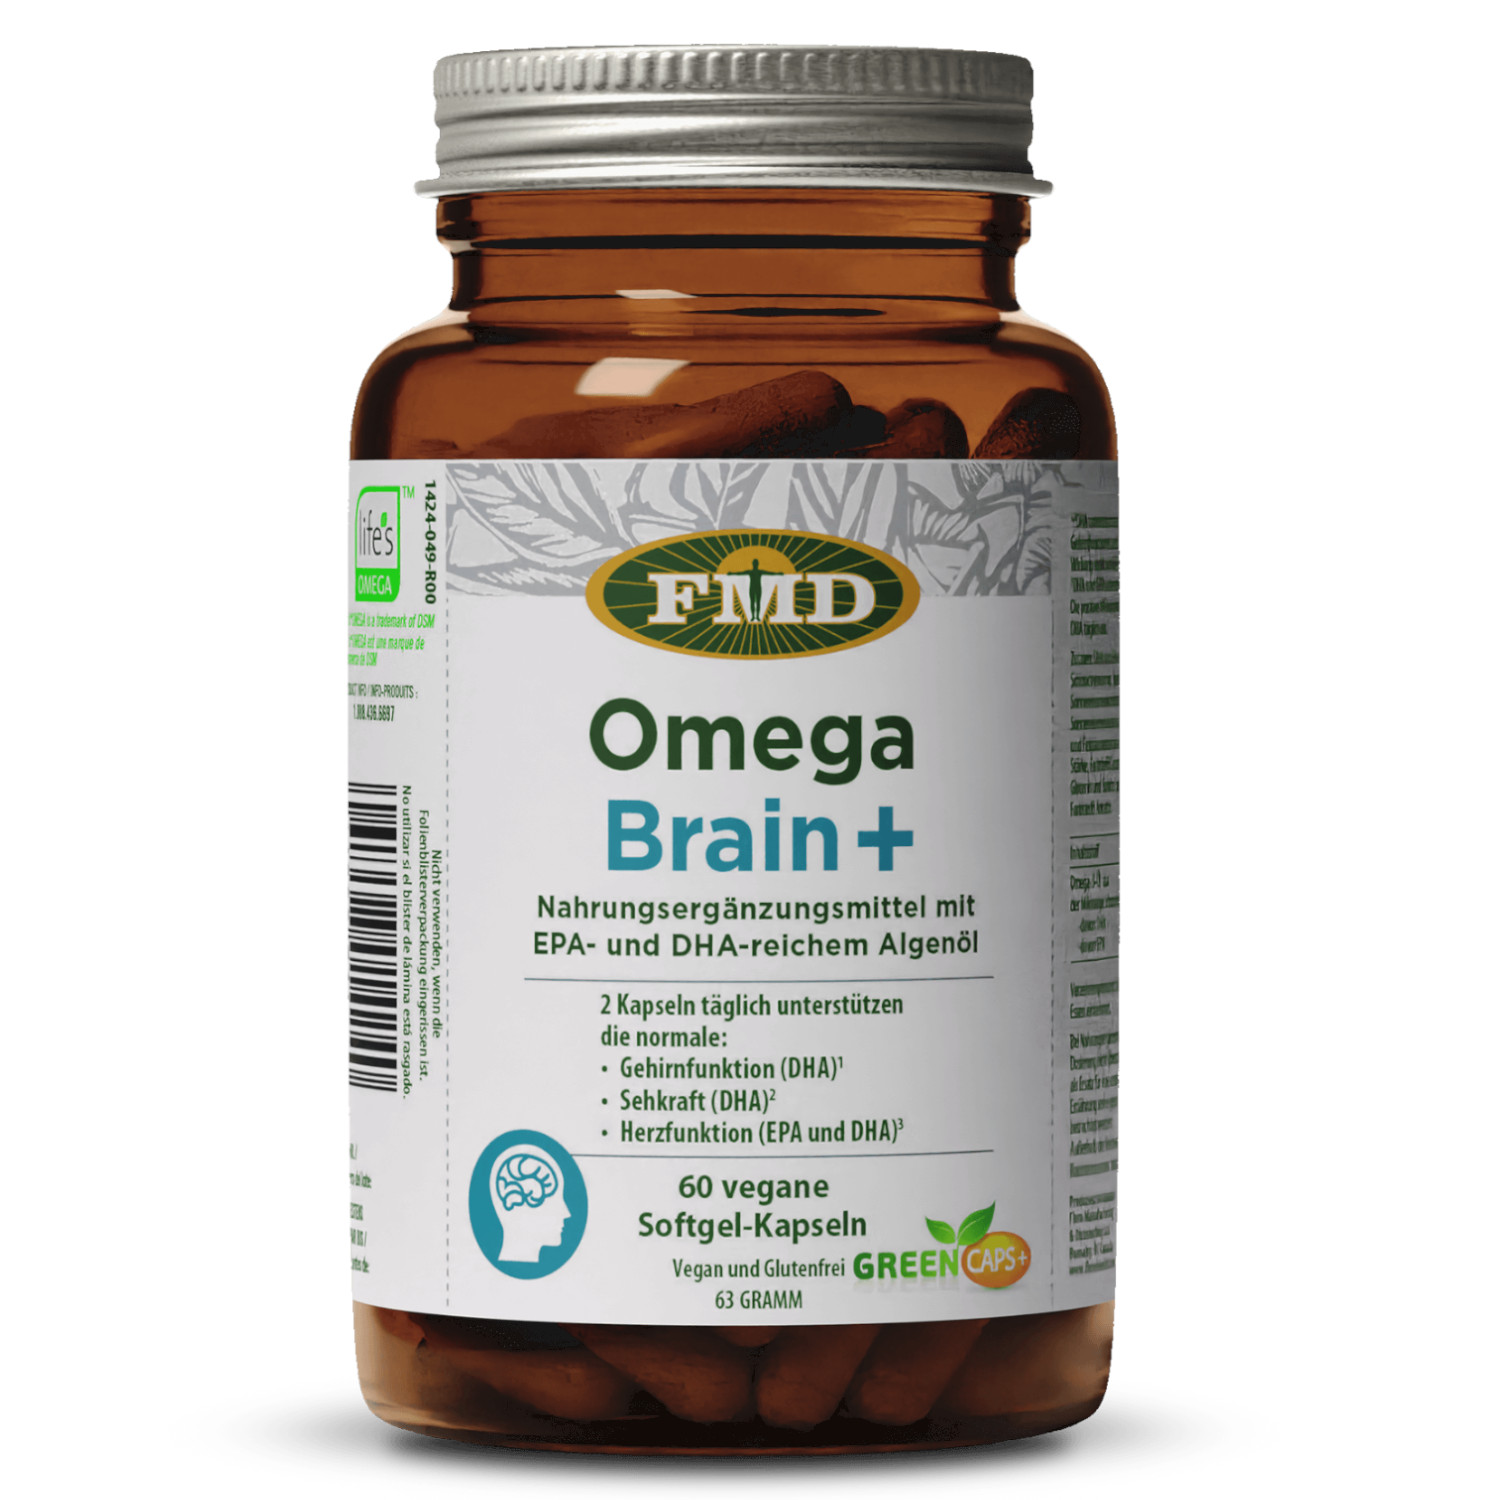 Omega Brain+ von FMD - 60 Kapseln